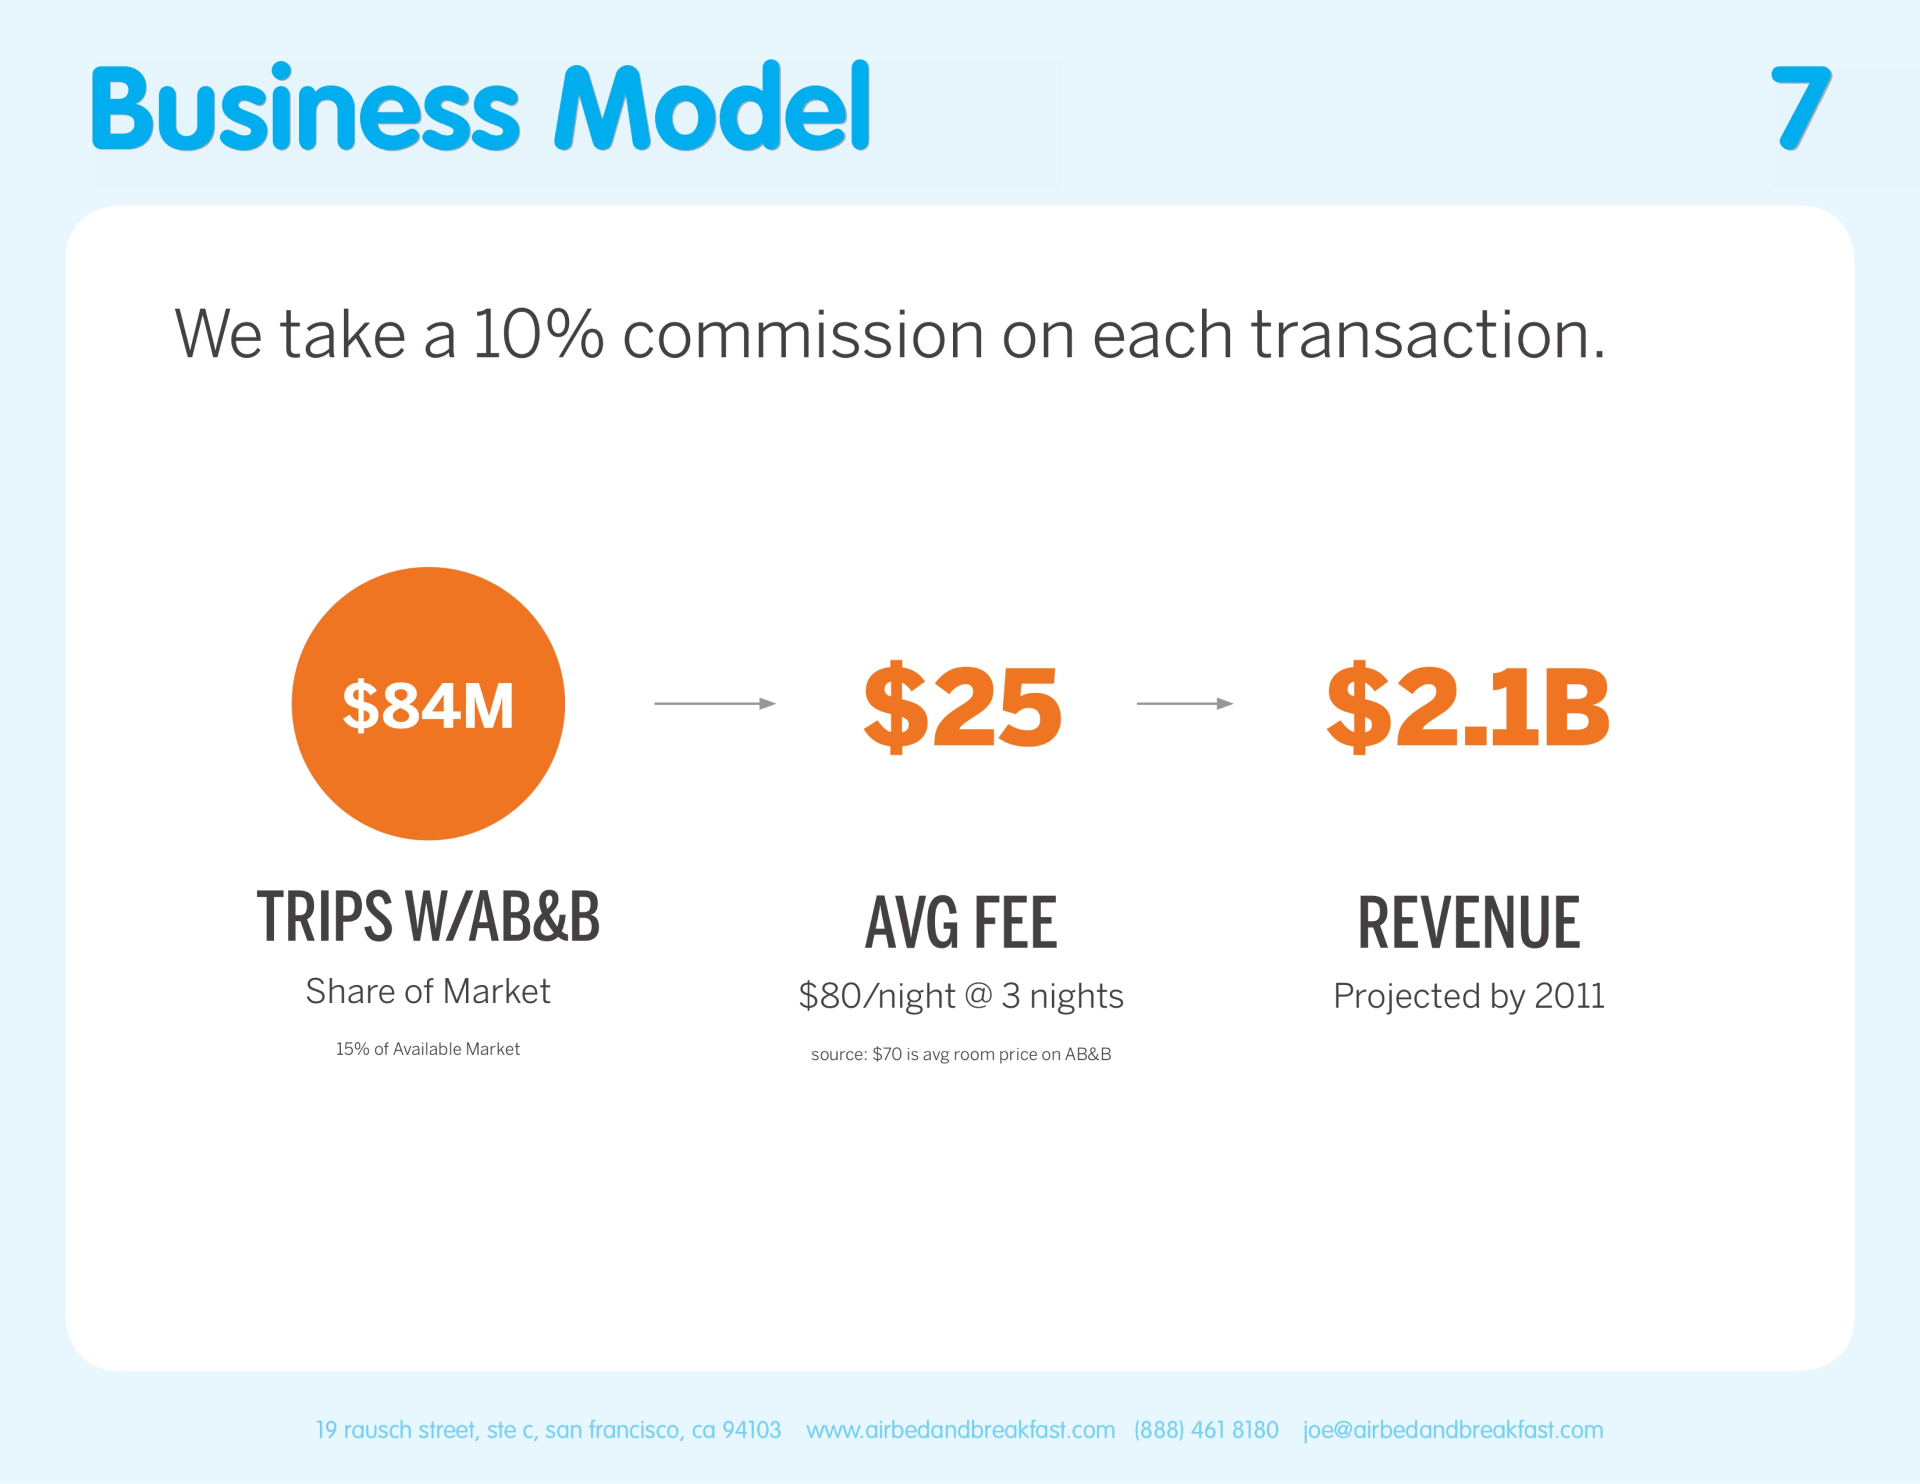 Слайд из презентации Airbnb с описанием способа монетизации в одно предложение: “We take a 10% commission on each transaction.” На этом же слайде продемонстрировали, сколько они заработают с такой бизнес-моделью.